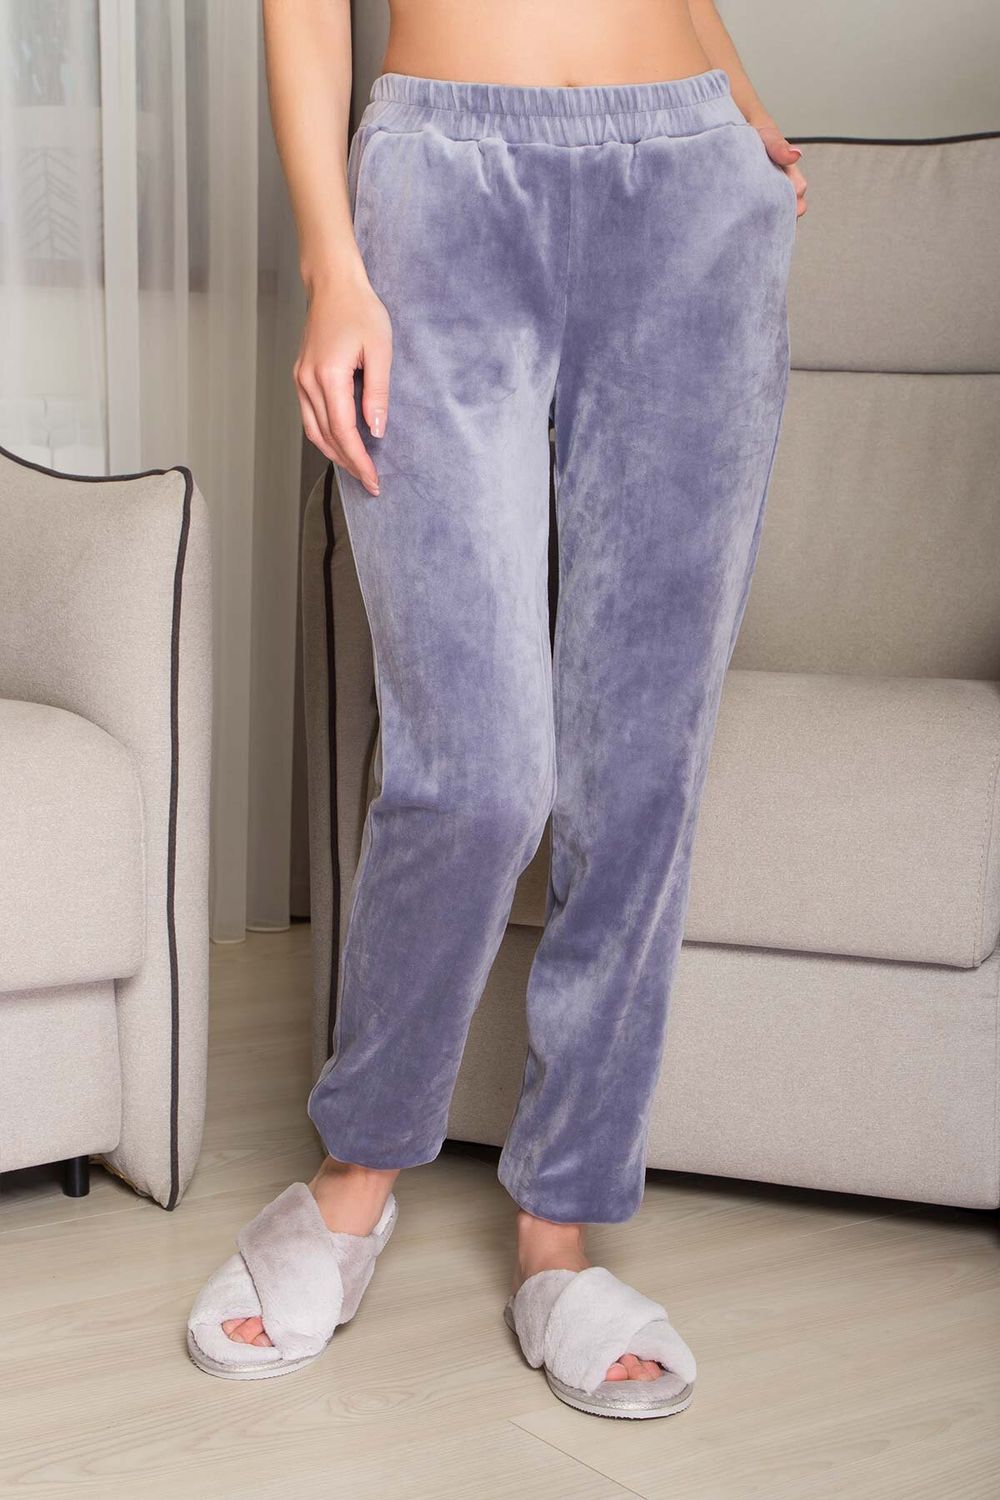 Женские пижамные штаны домашние велюровые - фото